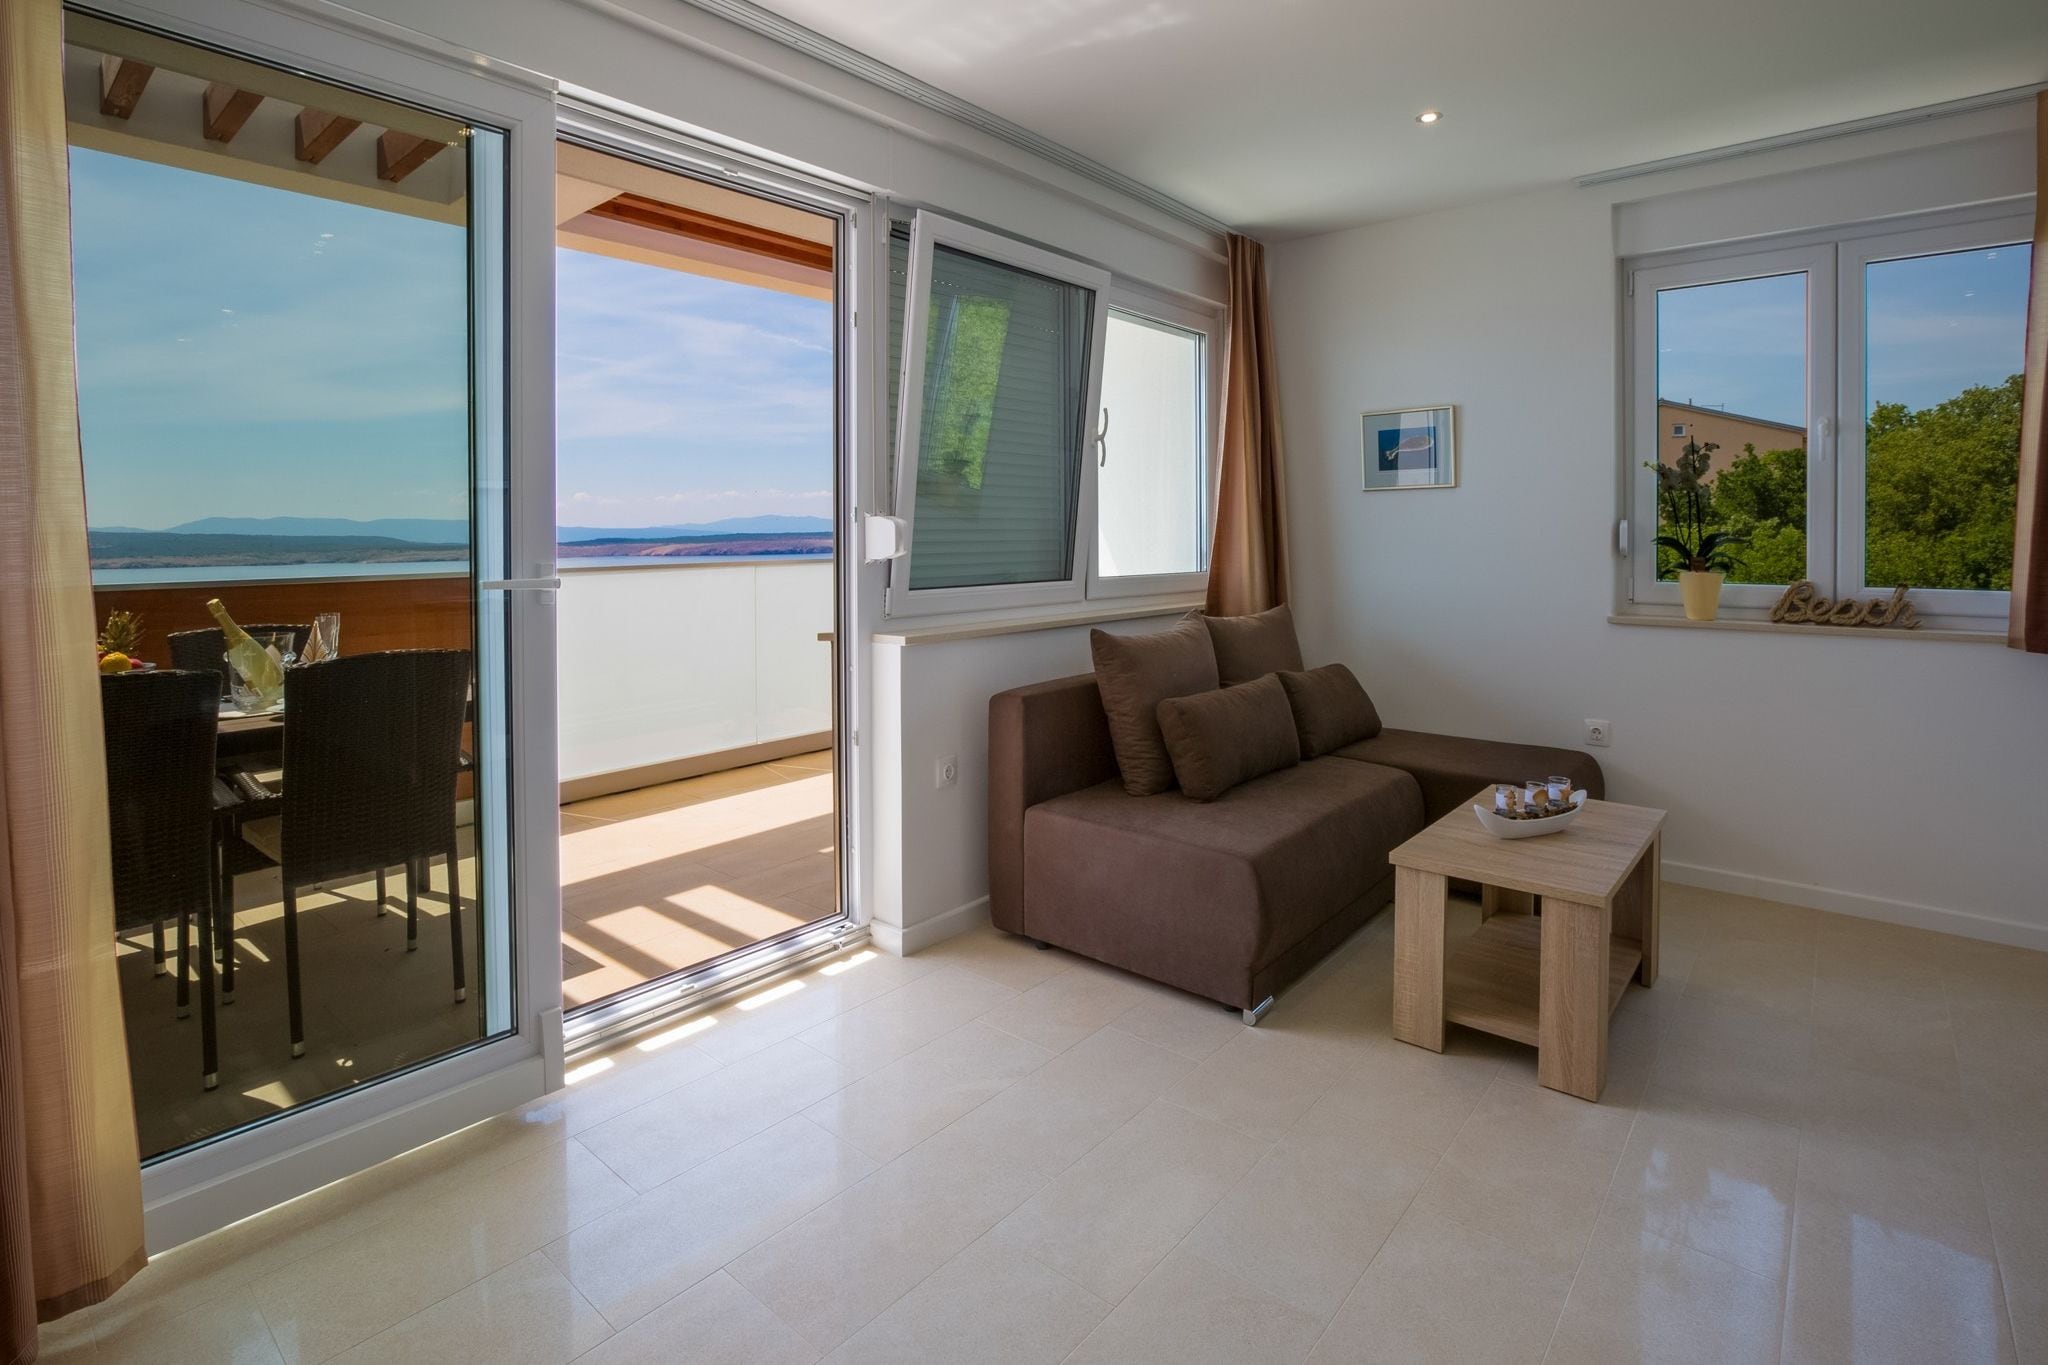 Mooi villa appartement met zwembad en uitzicht op zee!